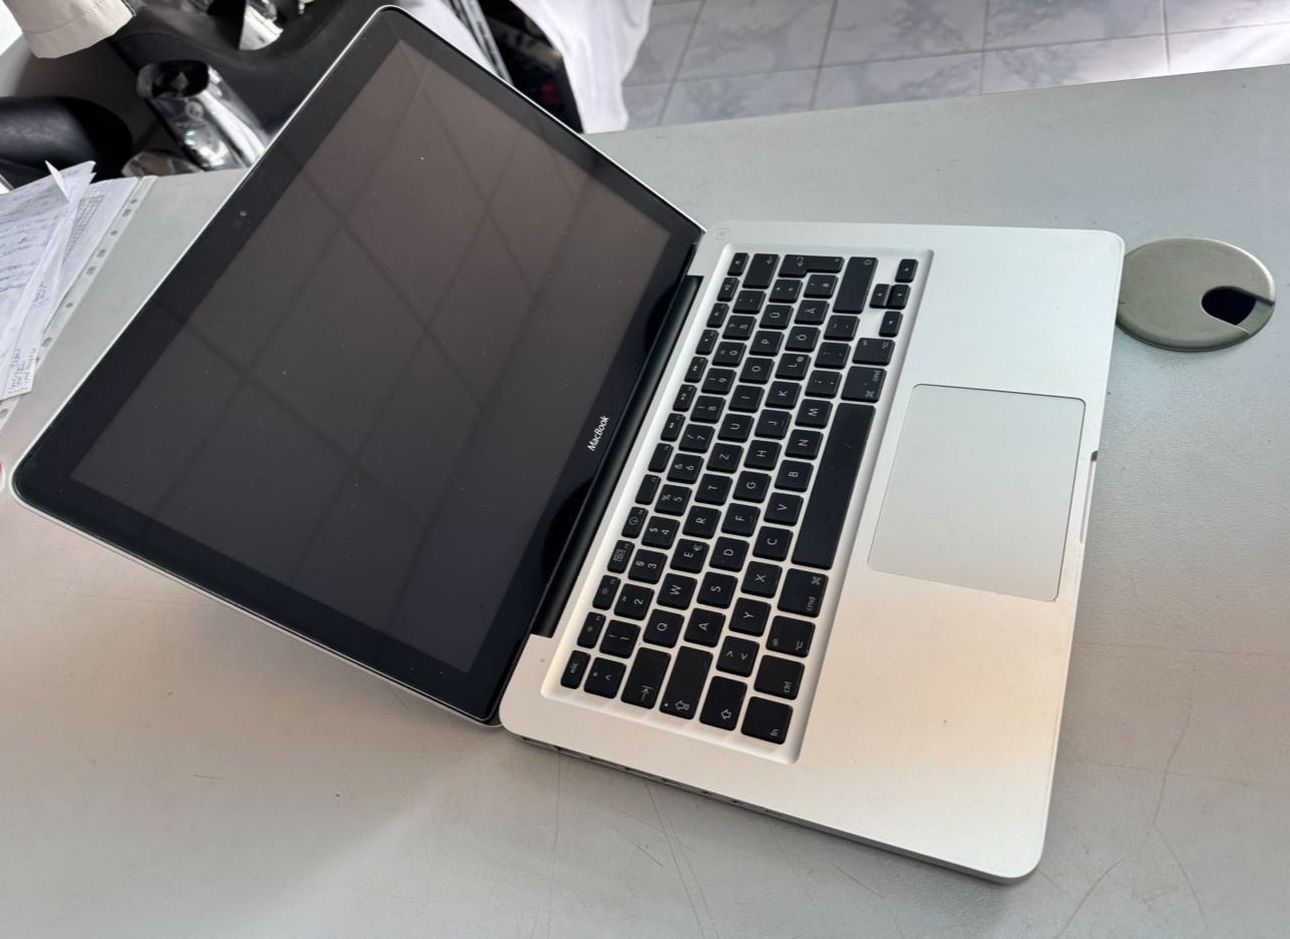 MacBook Pro A1278 13.3-inch, Core 2 Duo / 2GB RAM / 160GB